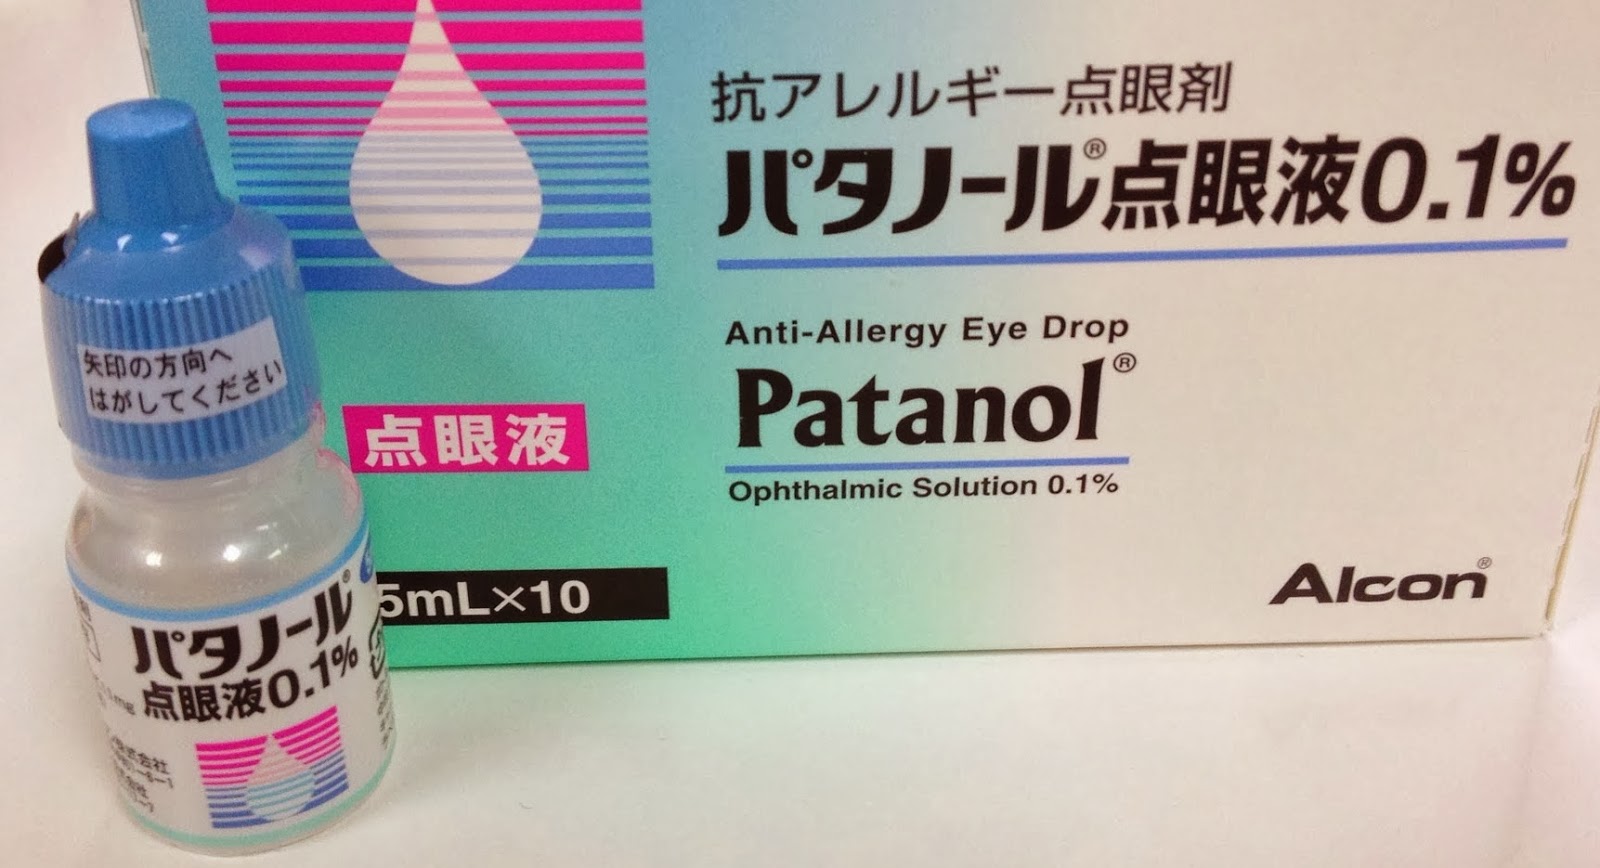 点眼 液 パタノール パタノール点眼液の後発品が販売されるようです。